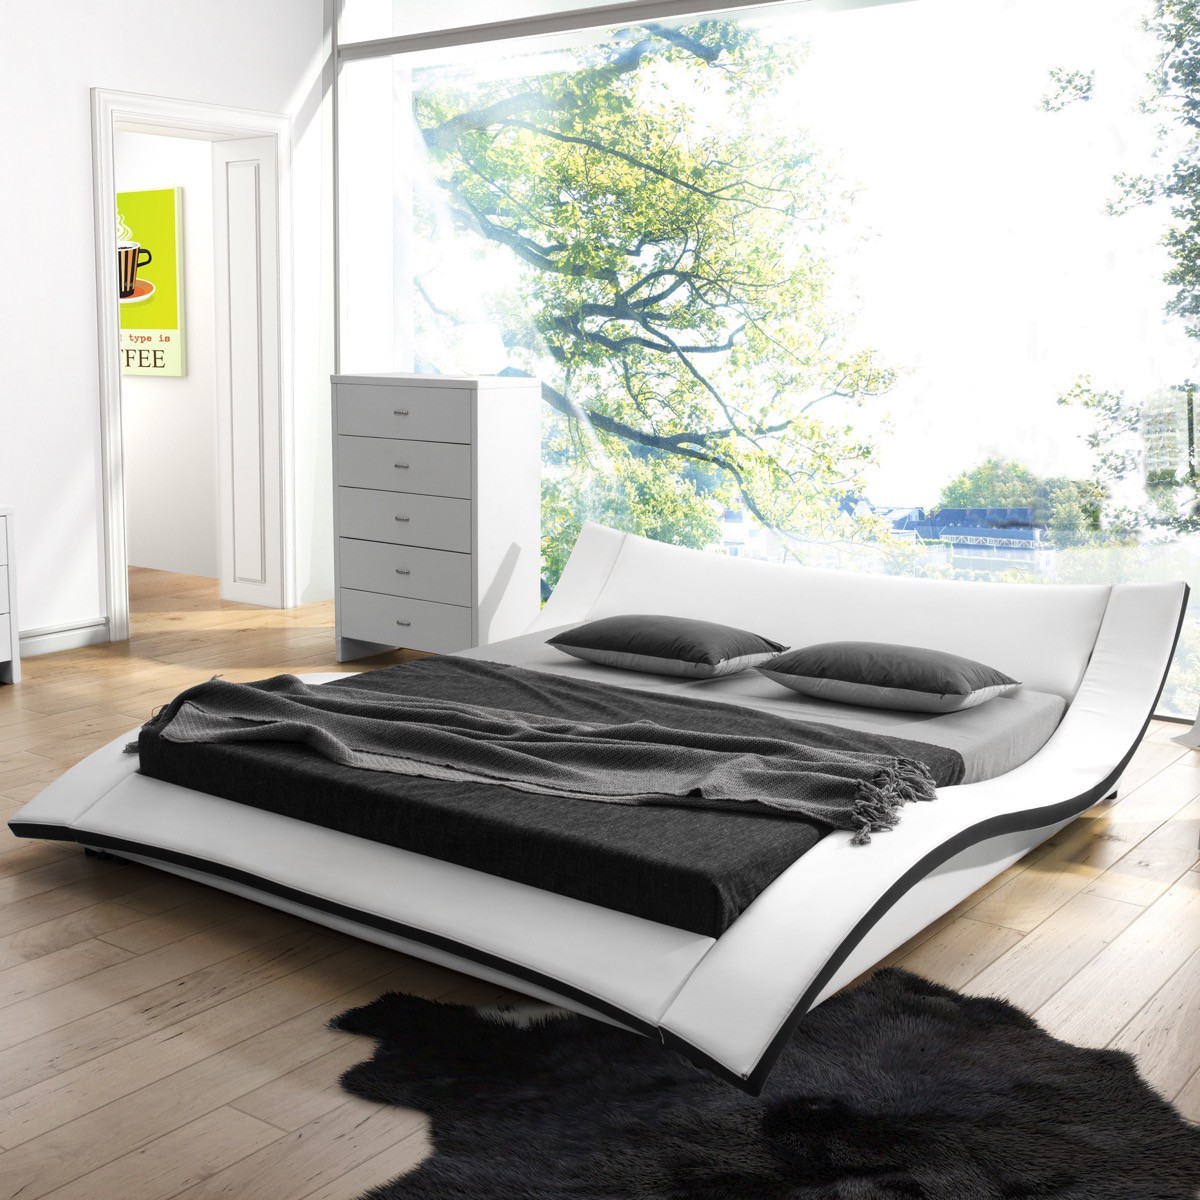 Thiết kế giường ngủ sang chảnh và thoải mái: Giường ngủ sang trọng và thoải mái tạo nên không gian nghỉ ngơi tuyệt vời giữa nhịp sống vội vàng hiện nay. Với những thiết kế độc đáo, sáng tạo và bền bỉ, giường ngủ sẽ mang đến cho bạn giấc ngủ ngon và năng lượng mới cho ngày hôm sau.